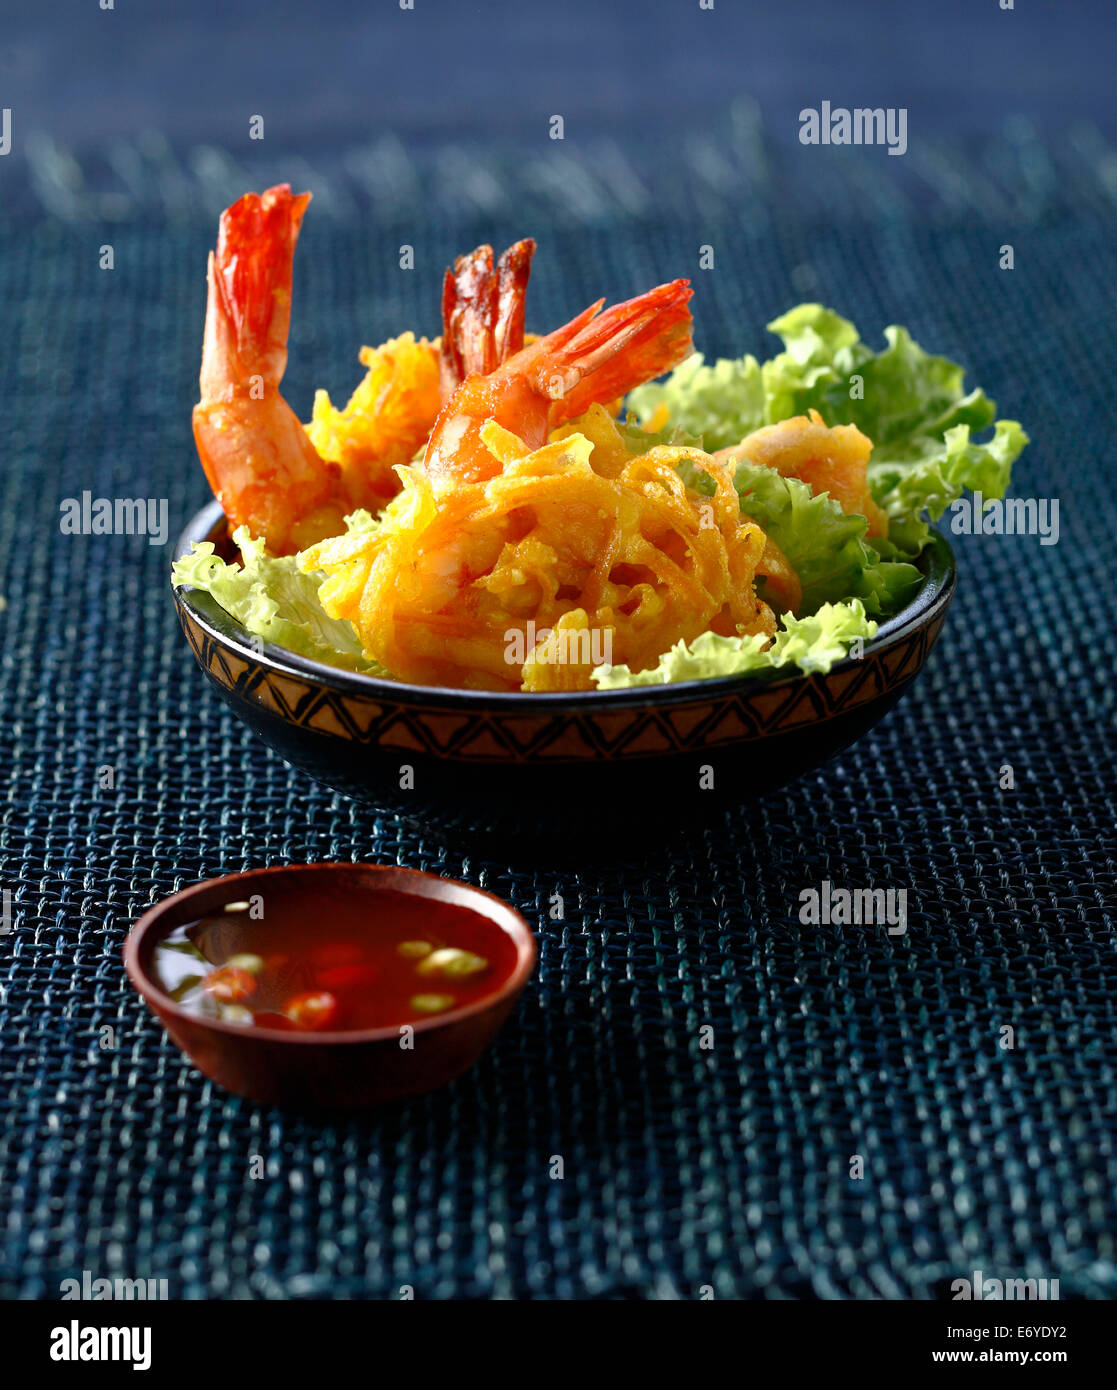 La patate douce et de crevettes tempuras Banque D'Images